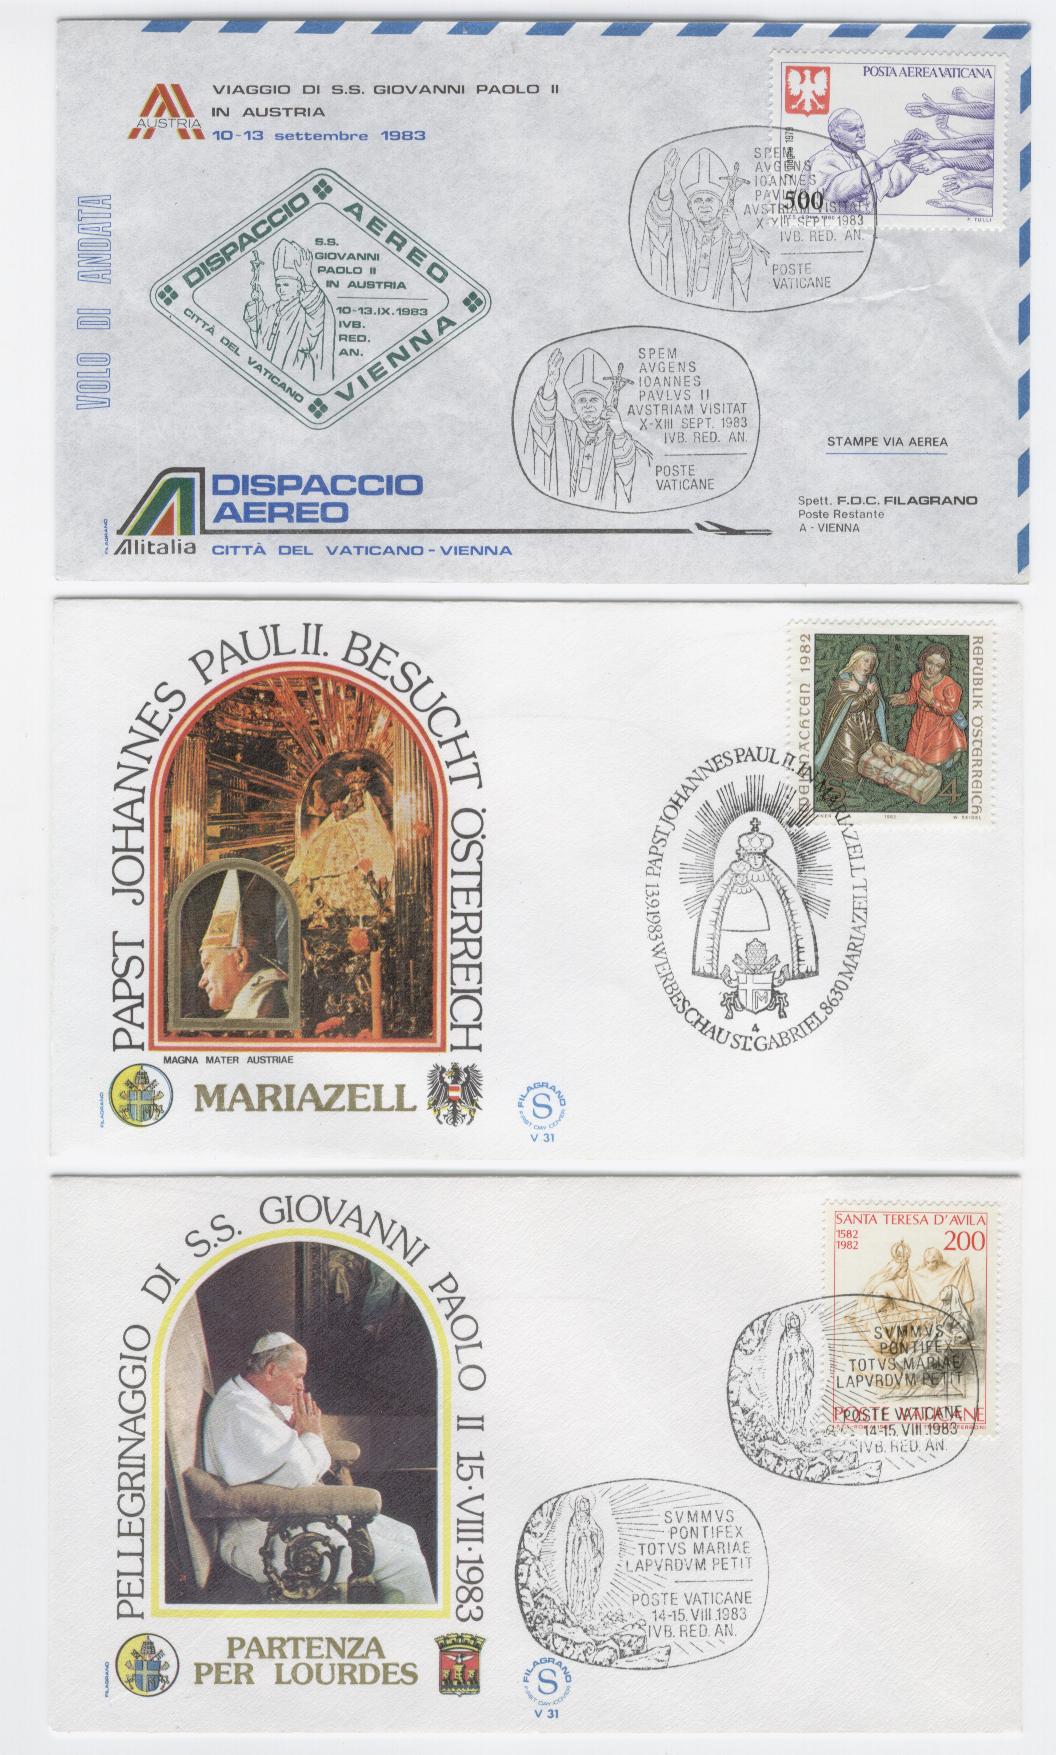 19626 - Viaggio di S.S. Giovanni Paolo II in Austria e Francia 1983